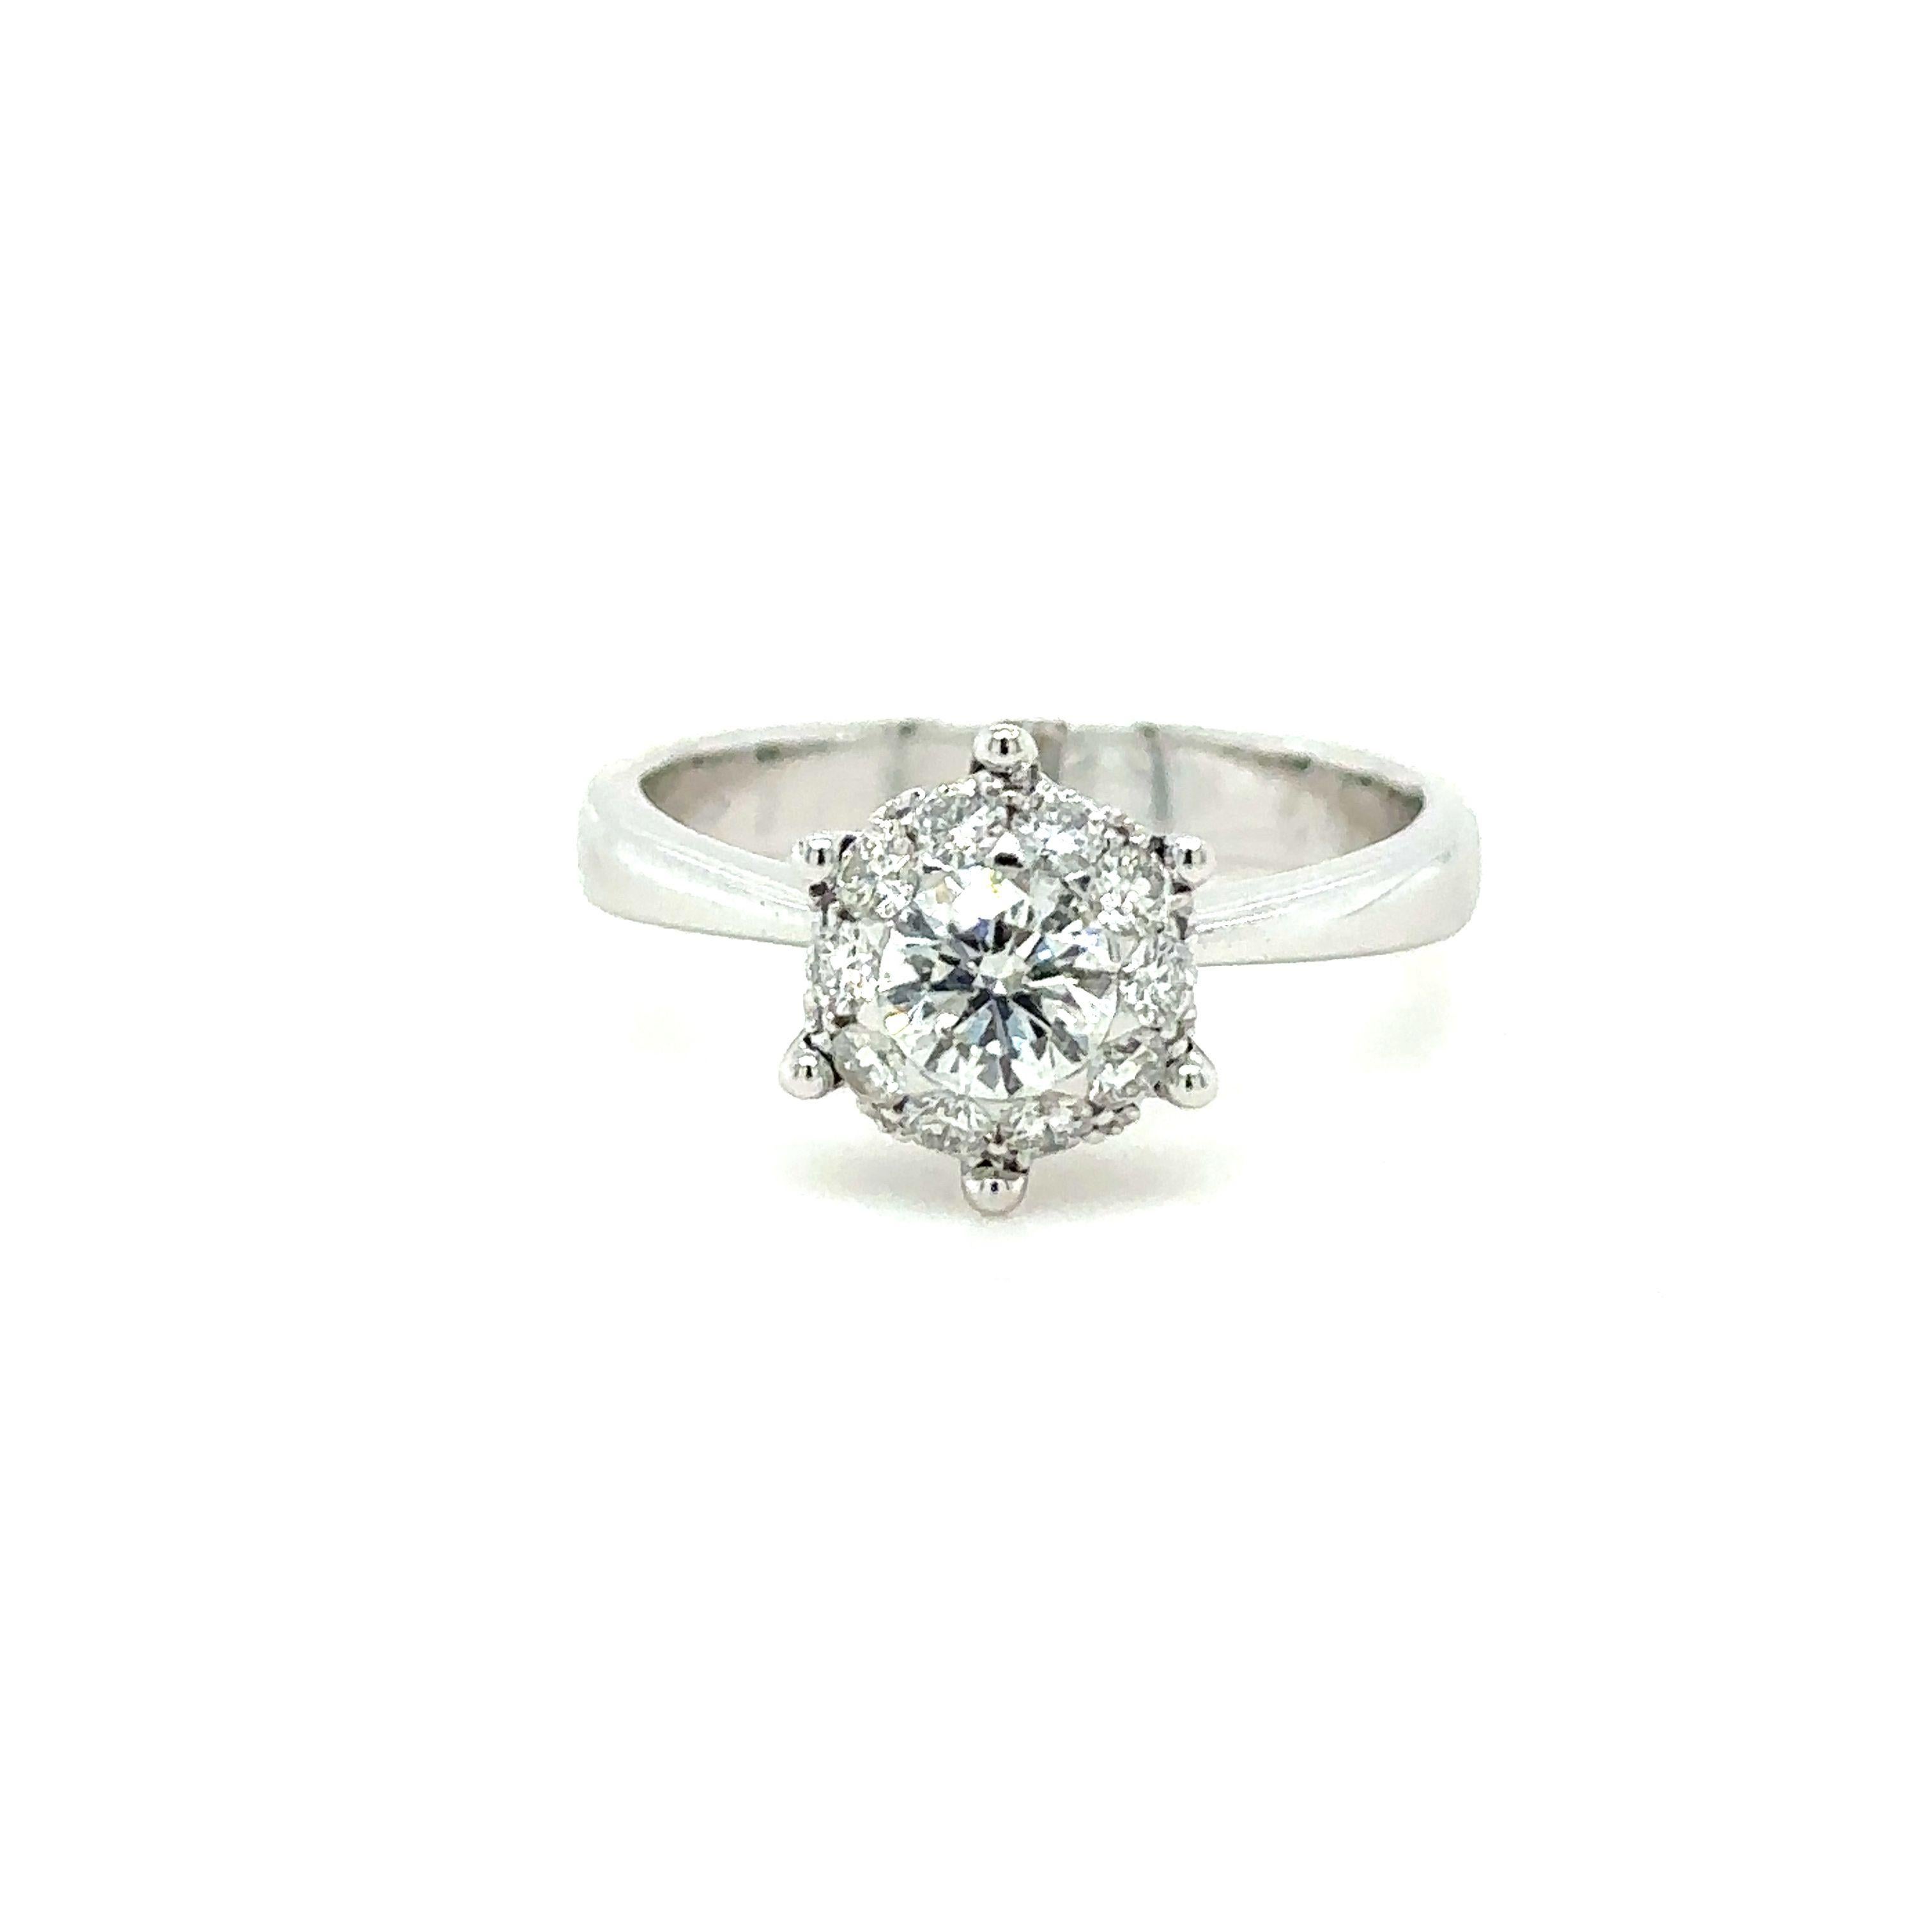 Bespoke Custom Ladies Diamond Ring 0.60ct 5